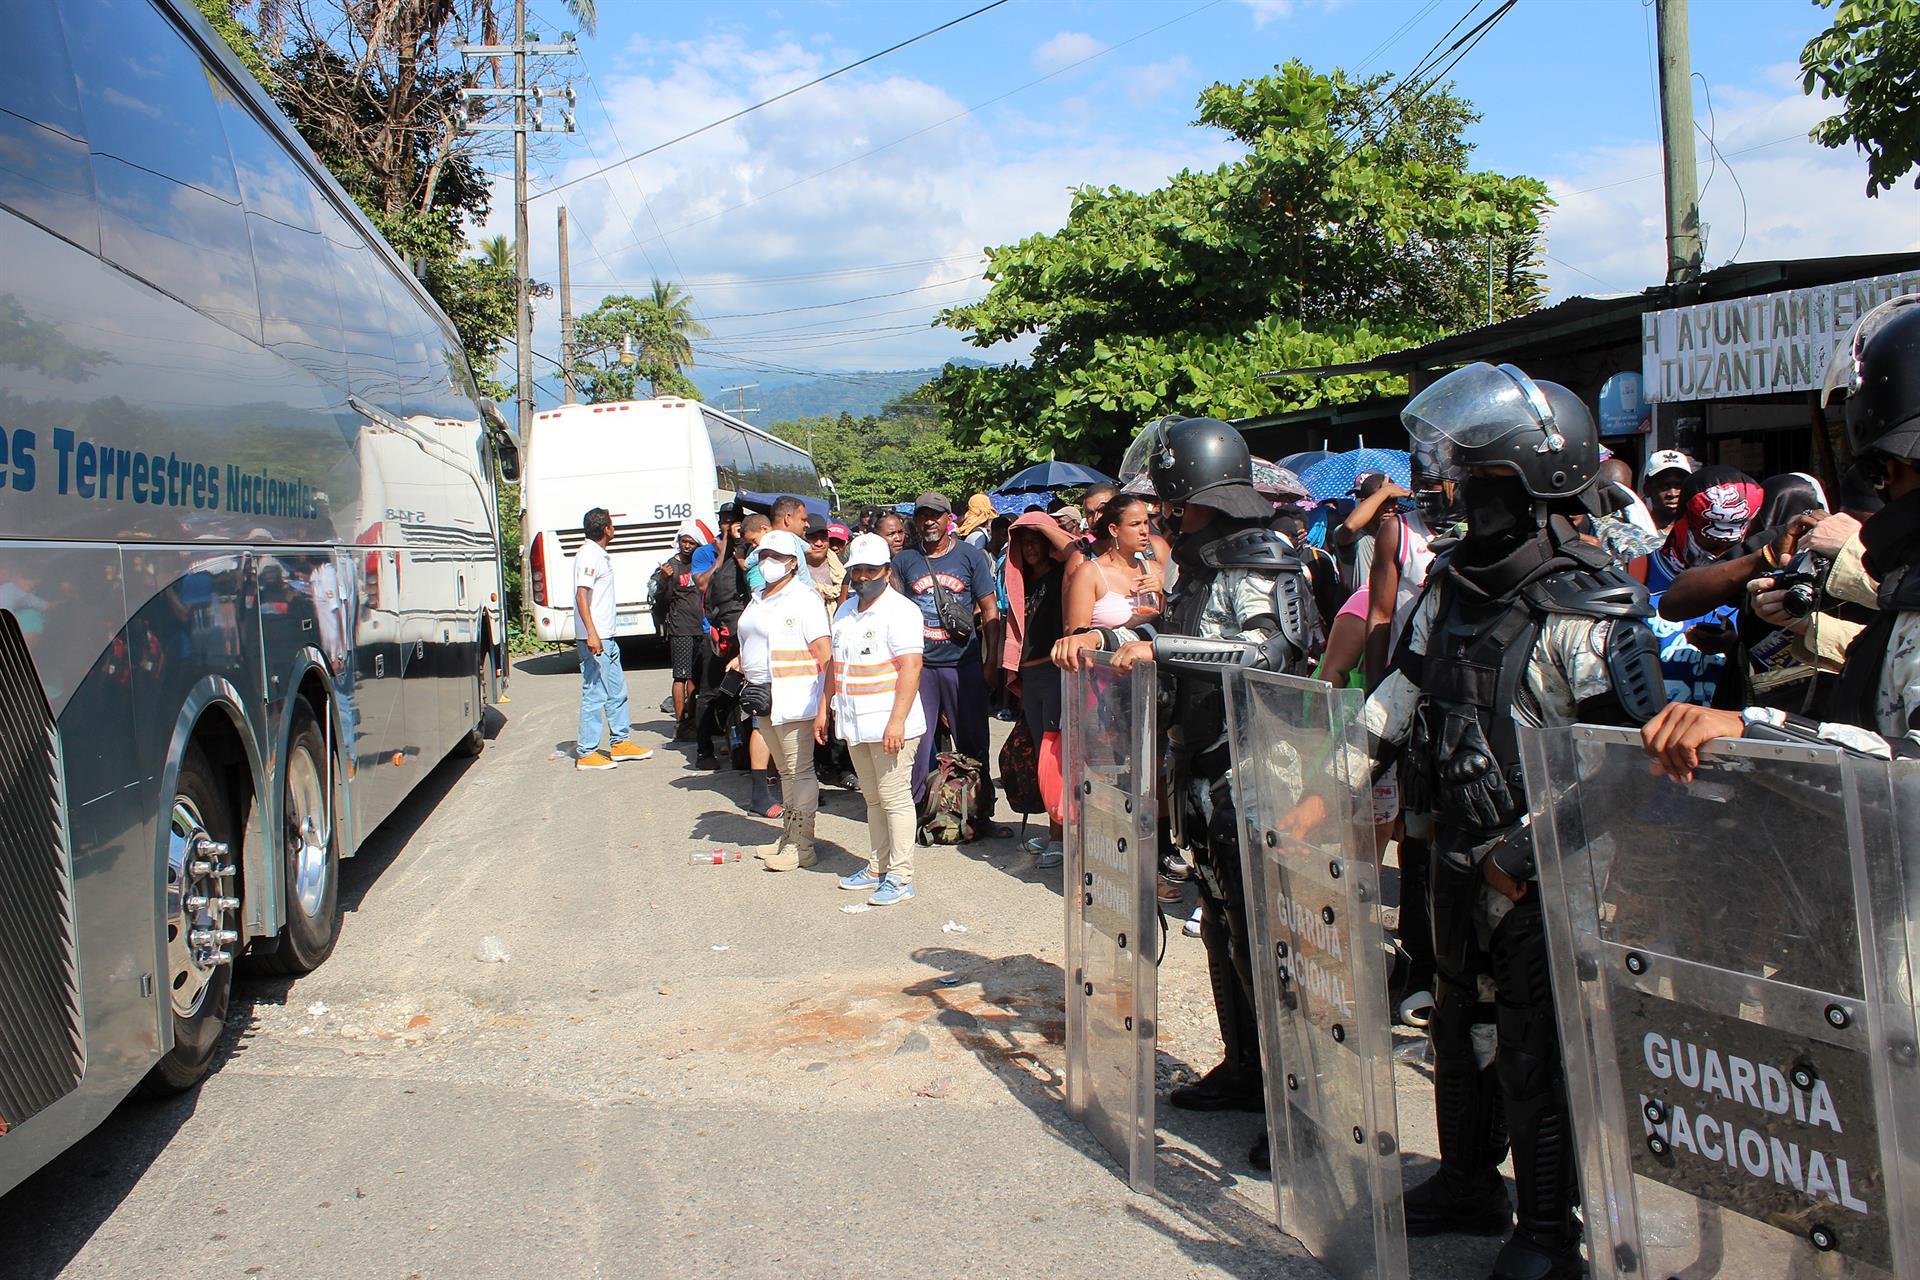 Agentes de la Guardia Nacional organizaron a los migrantes para que subiesen a los autobuses.